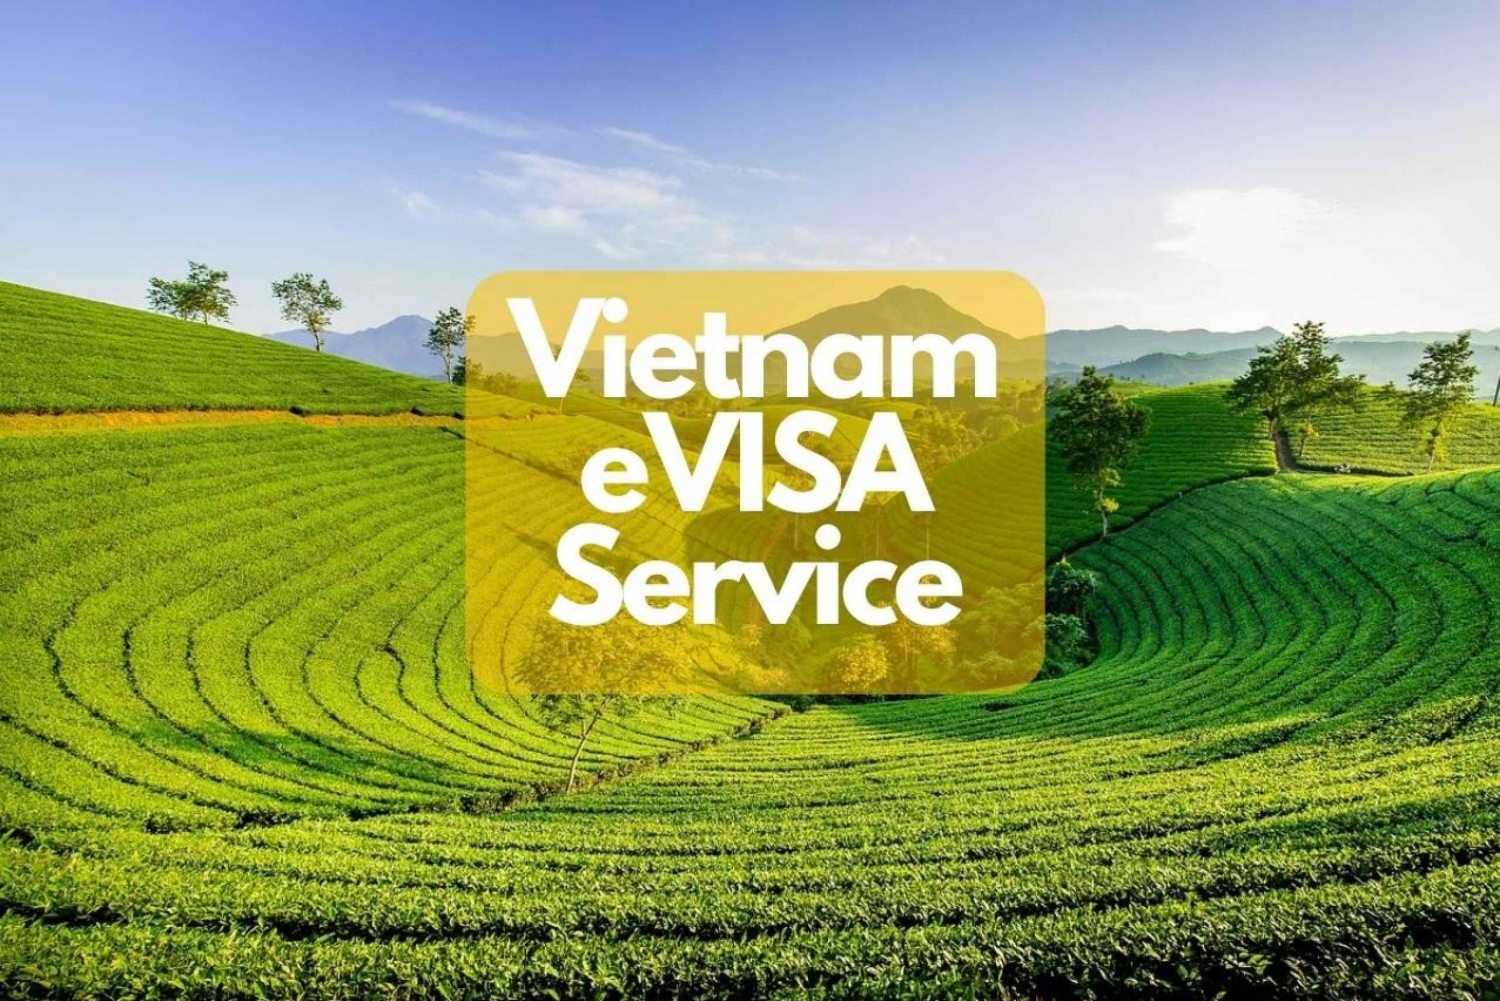 Vietnam E-Visa Service kansainvälisille matkustajille